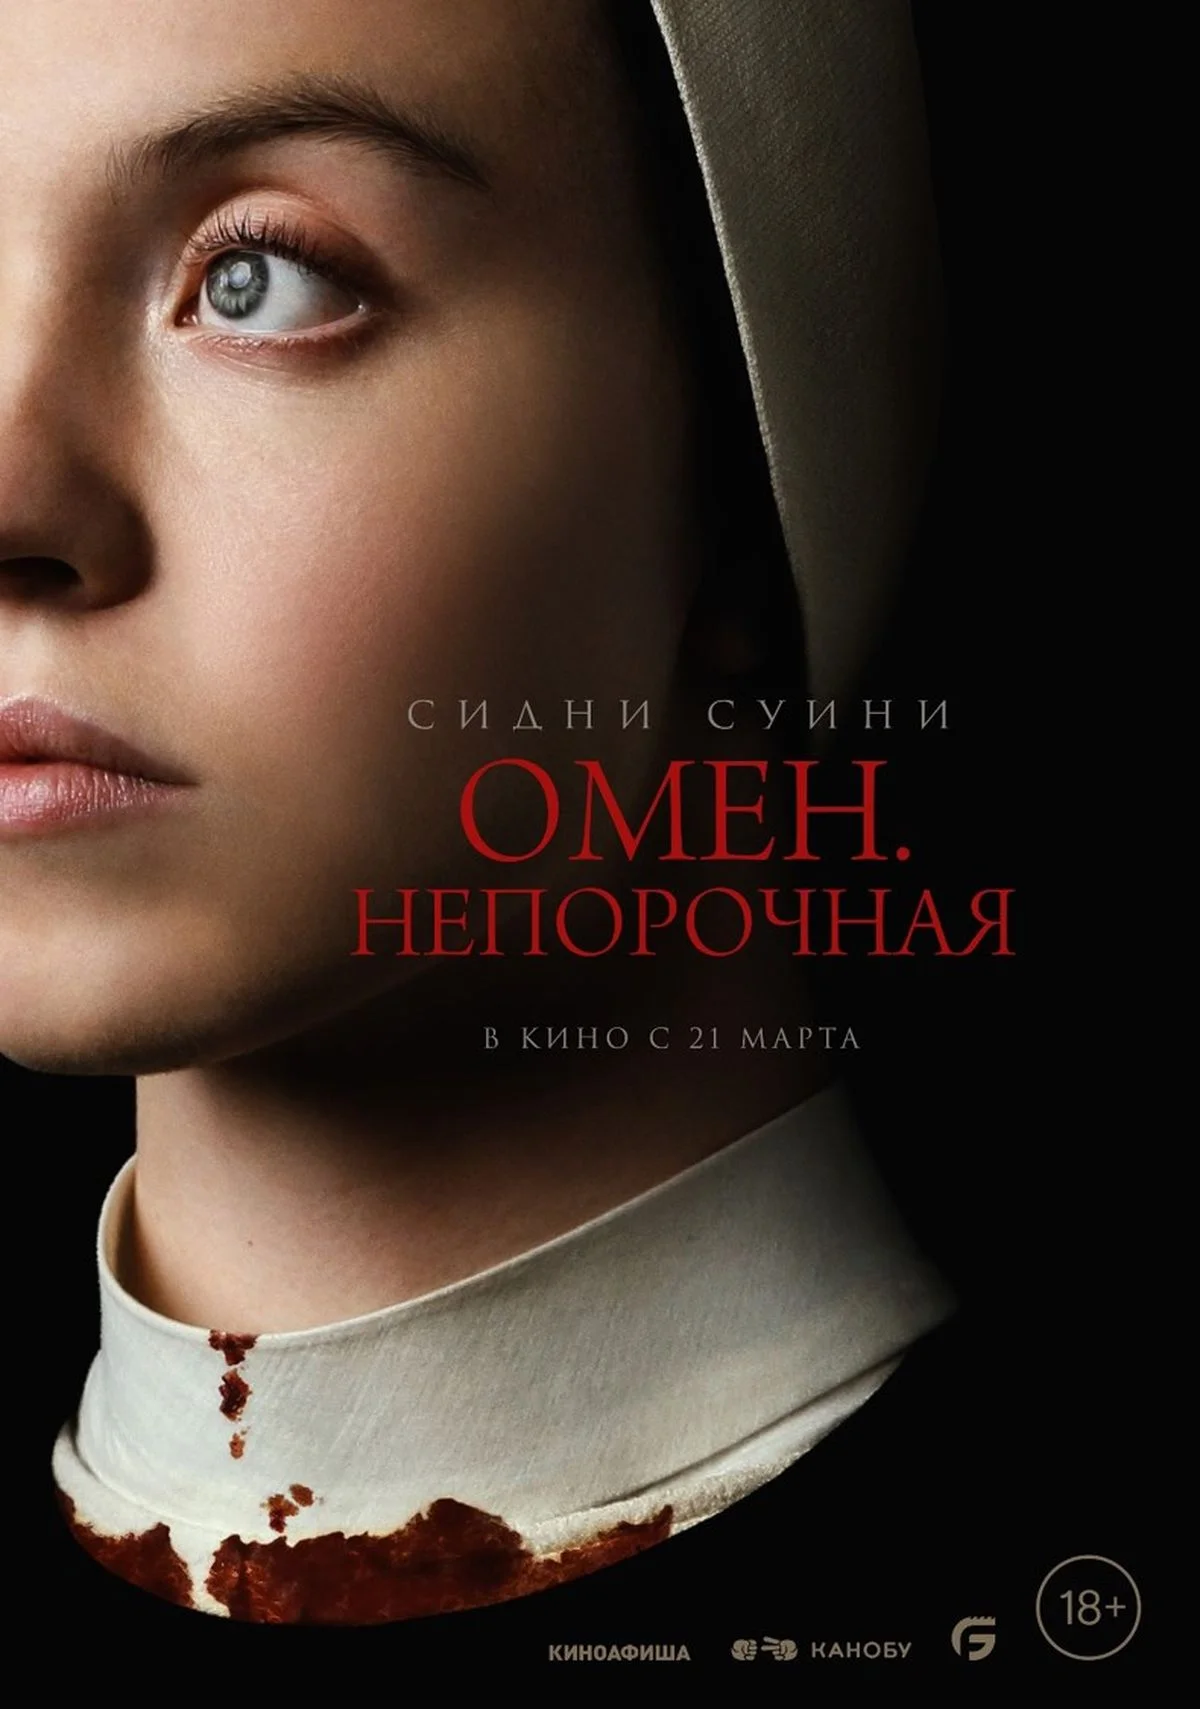 Российская премьера хоррора «Омен - Непорочная» с Сидни Суини состоится 21 марта - фото 1